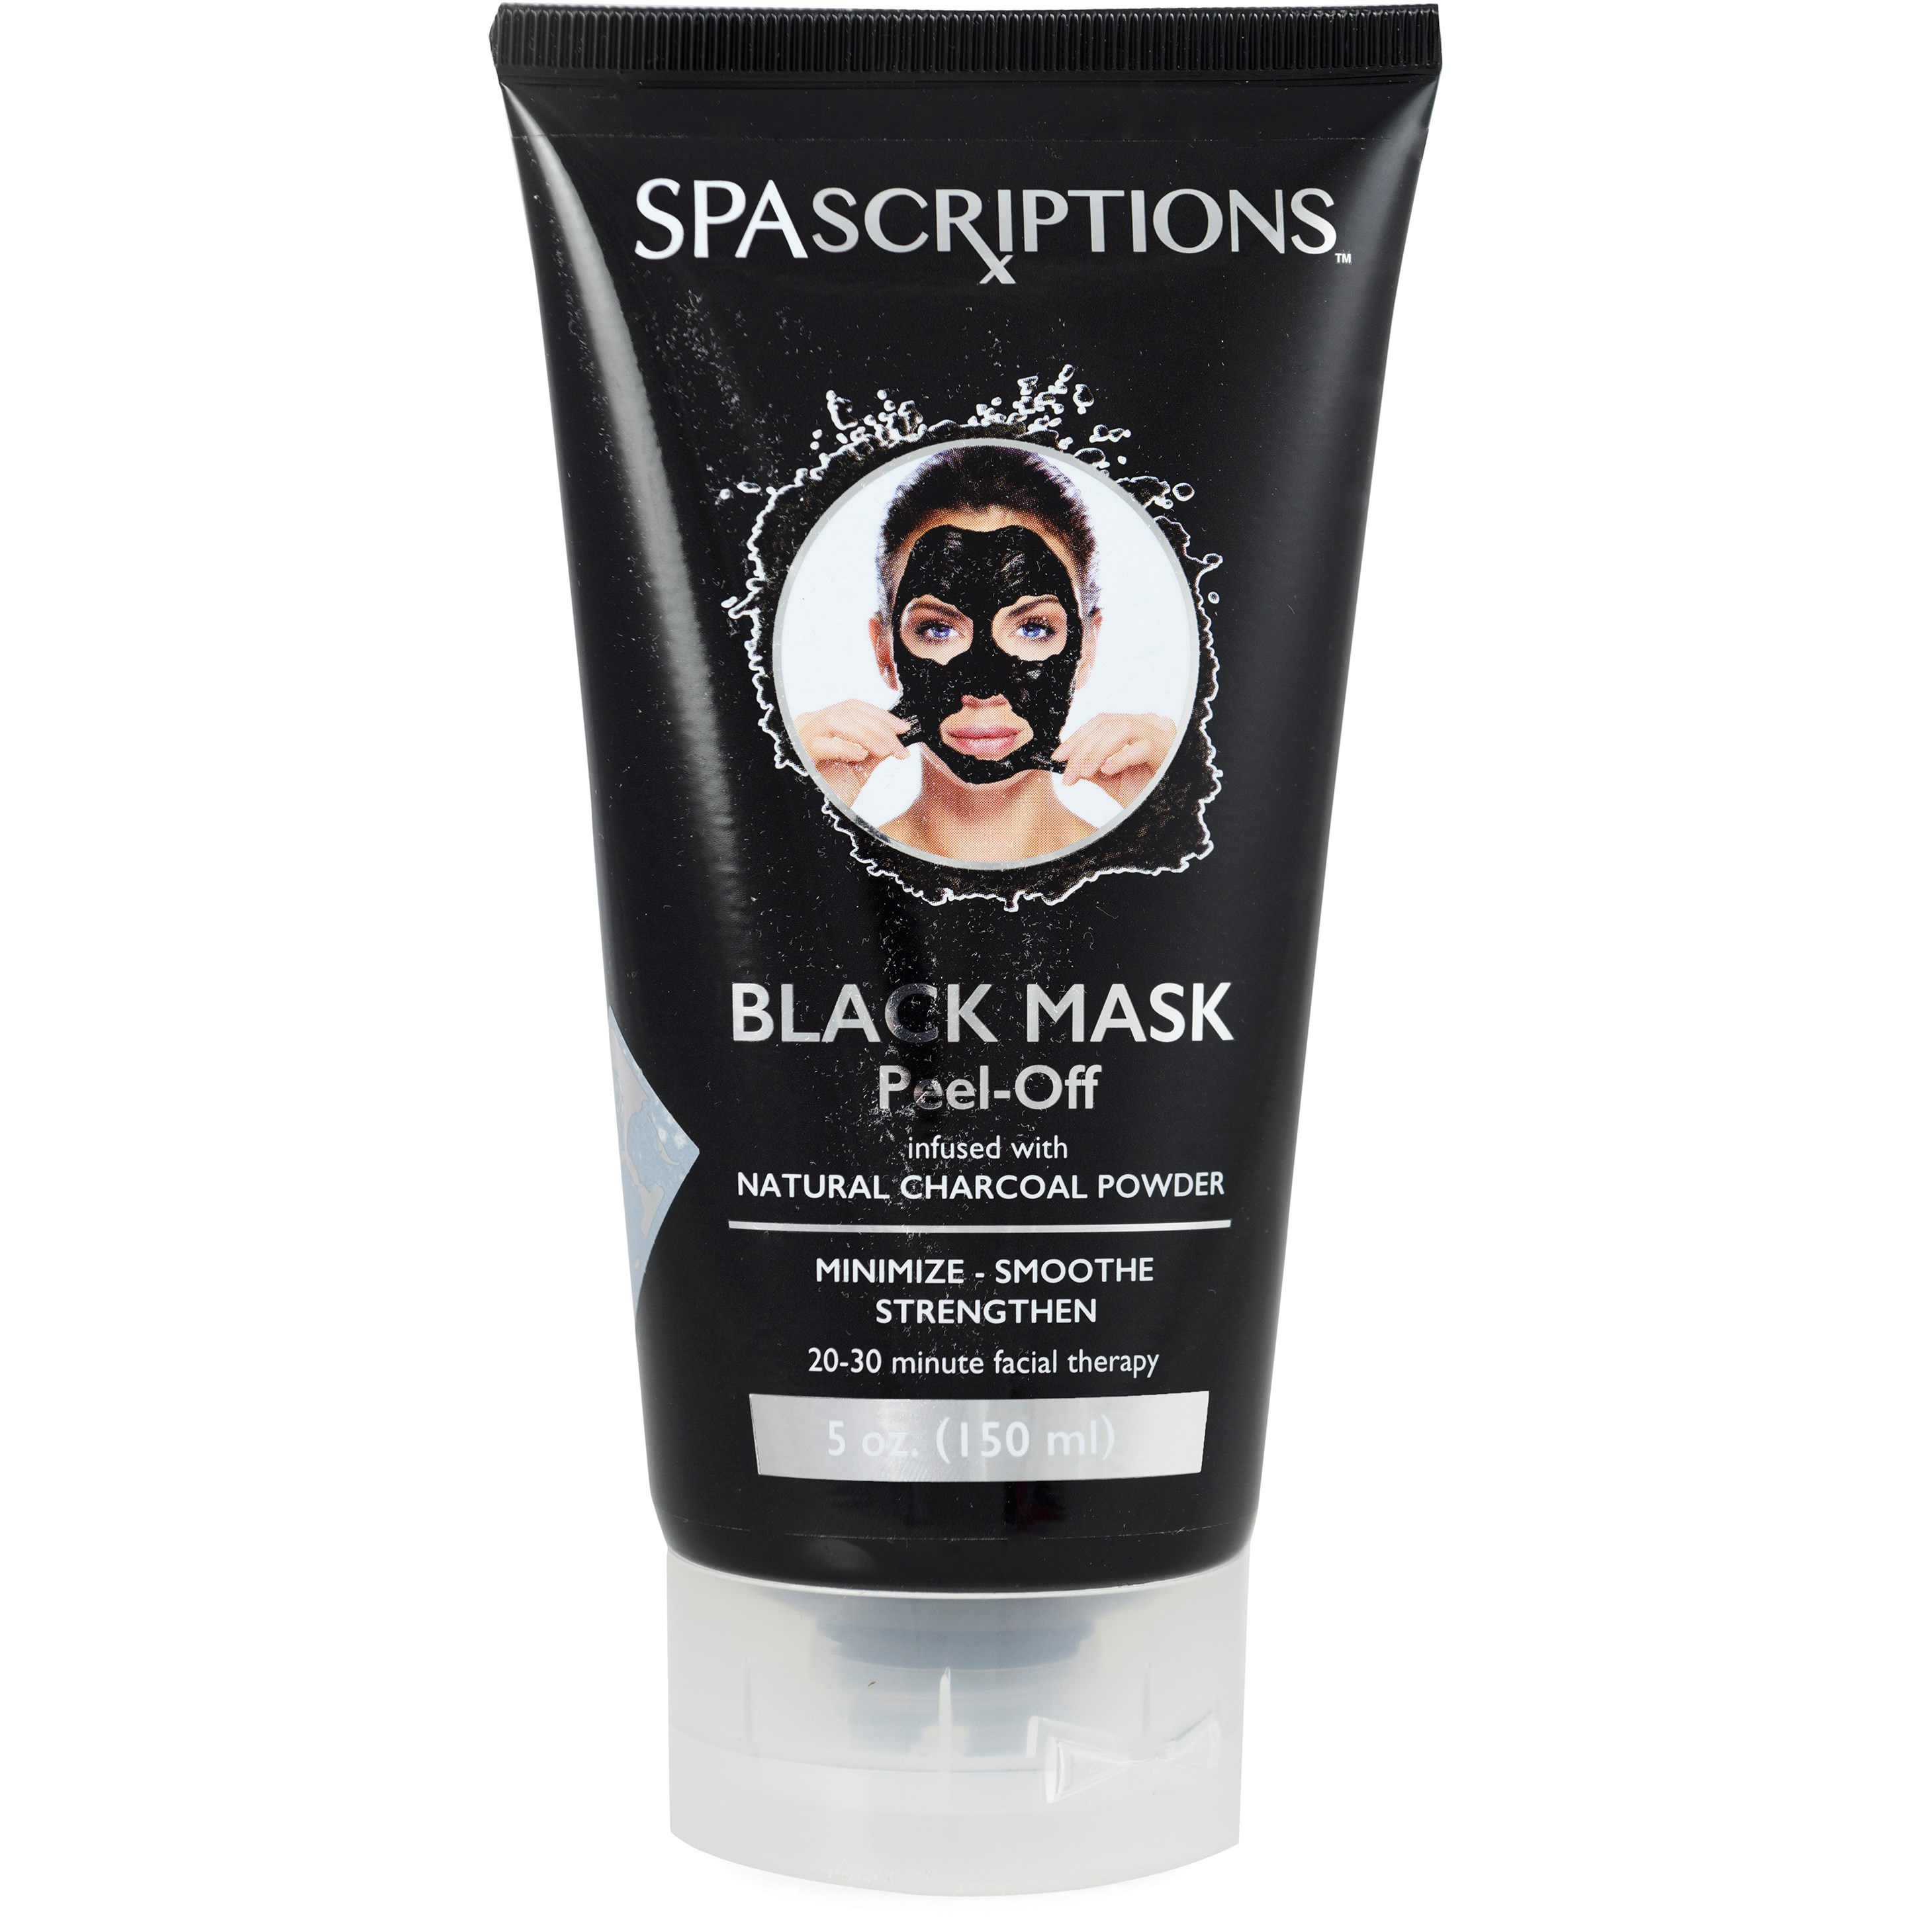 Läs mer om SpaScriptions Peel-Off Black Mask